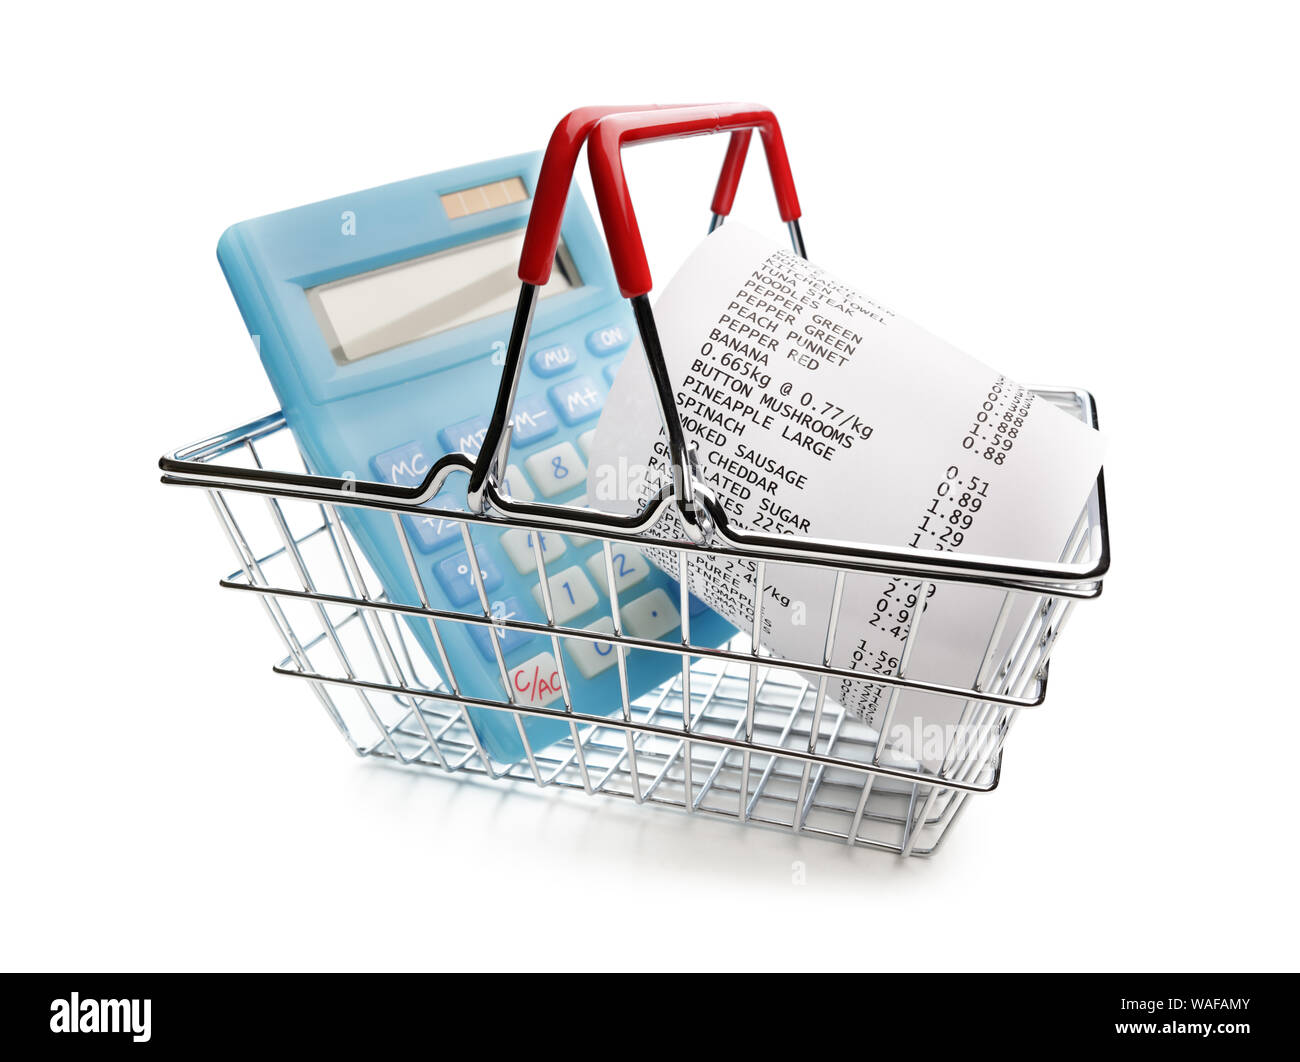 Recibo de compras, calculadora y cesta concepto para gastos de comestibles y consumismo Foto de stock